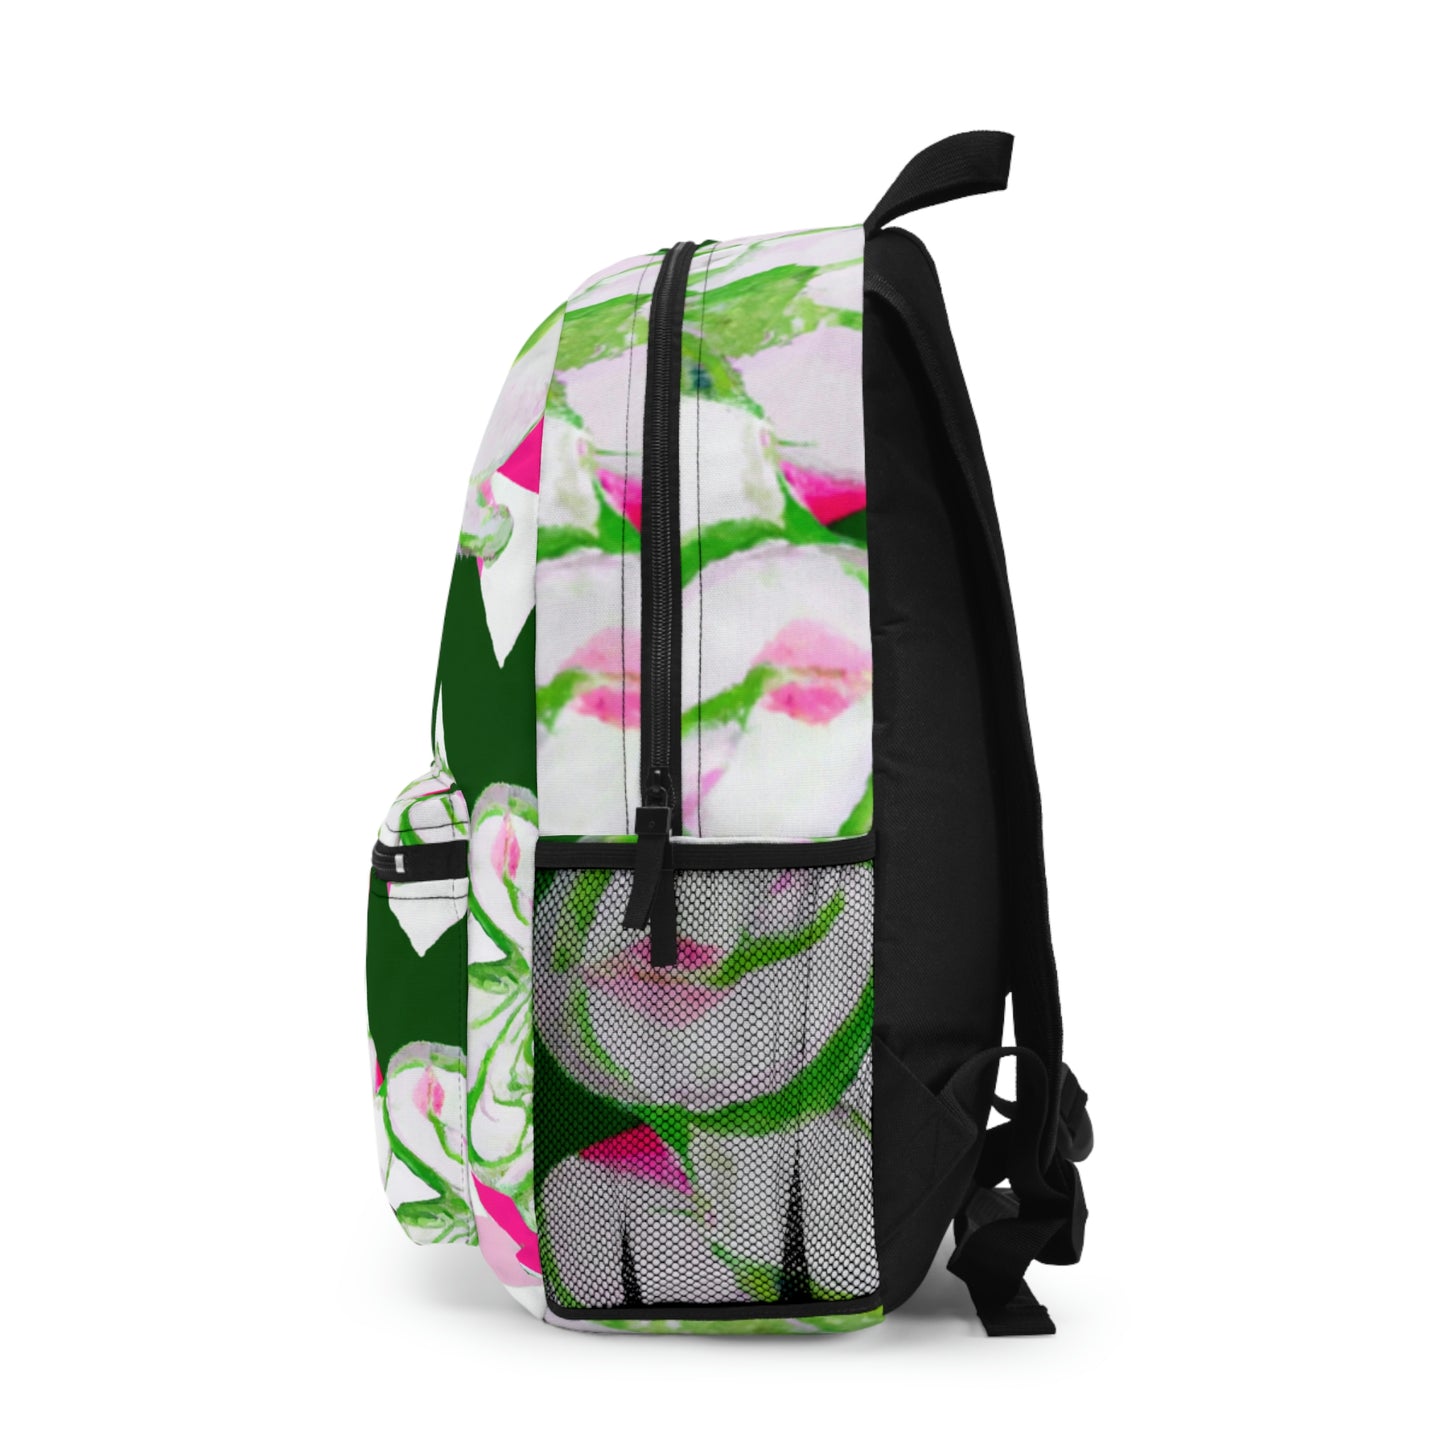 Floral Blush Backpack